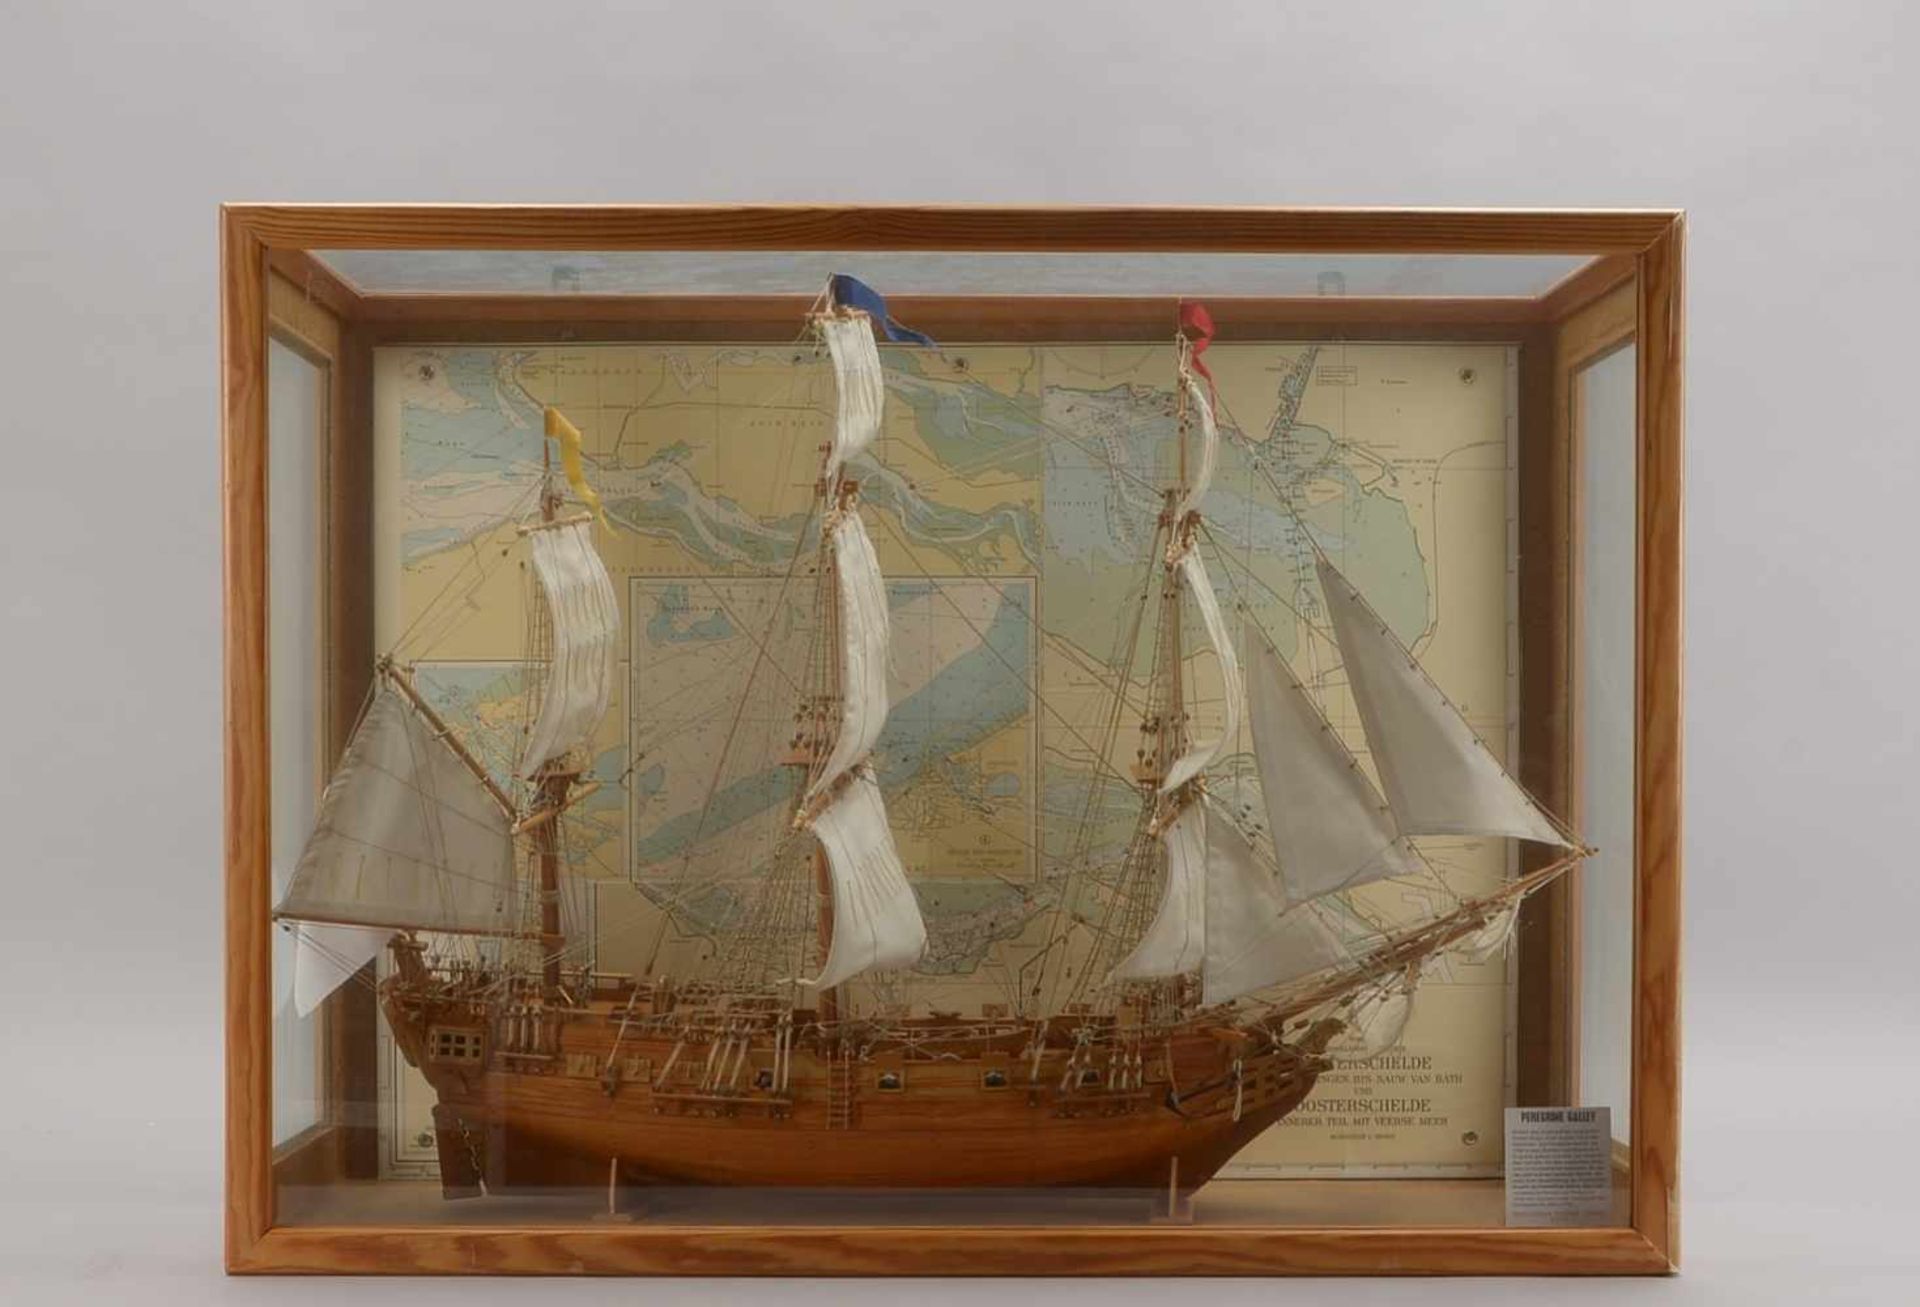 Schiffsmodell, Holz, 'Peregrine Galley', Maßstab 1:100 (maßstabsgerechter detailreicher Nachbau